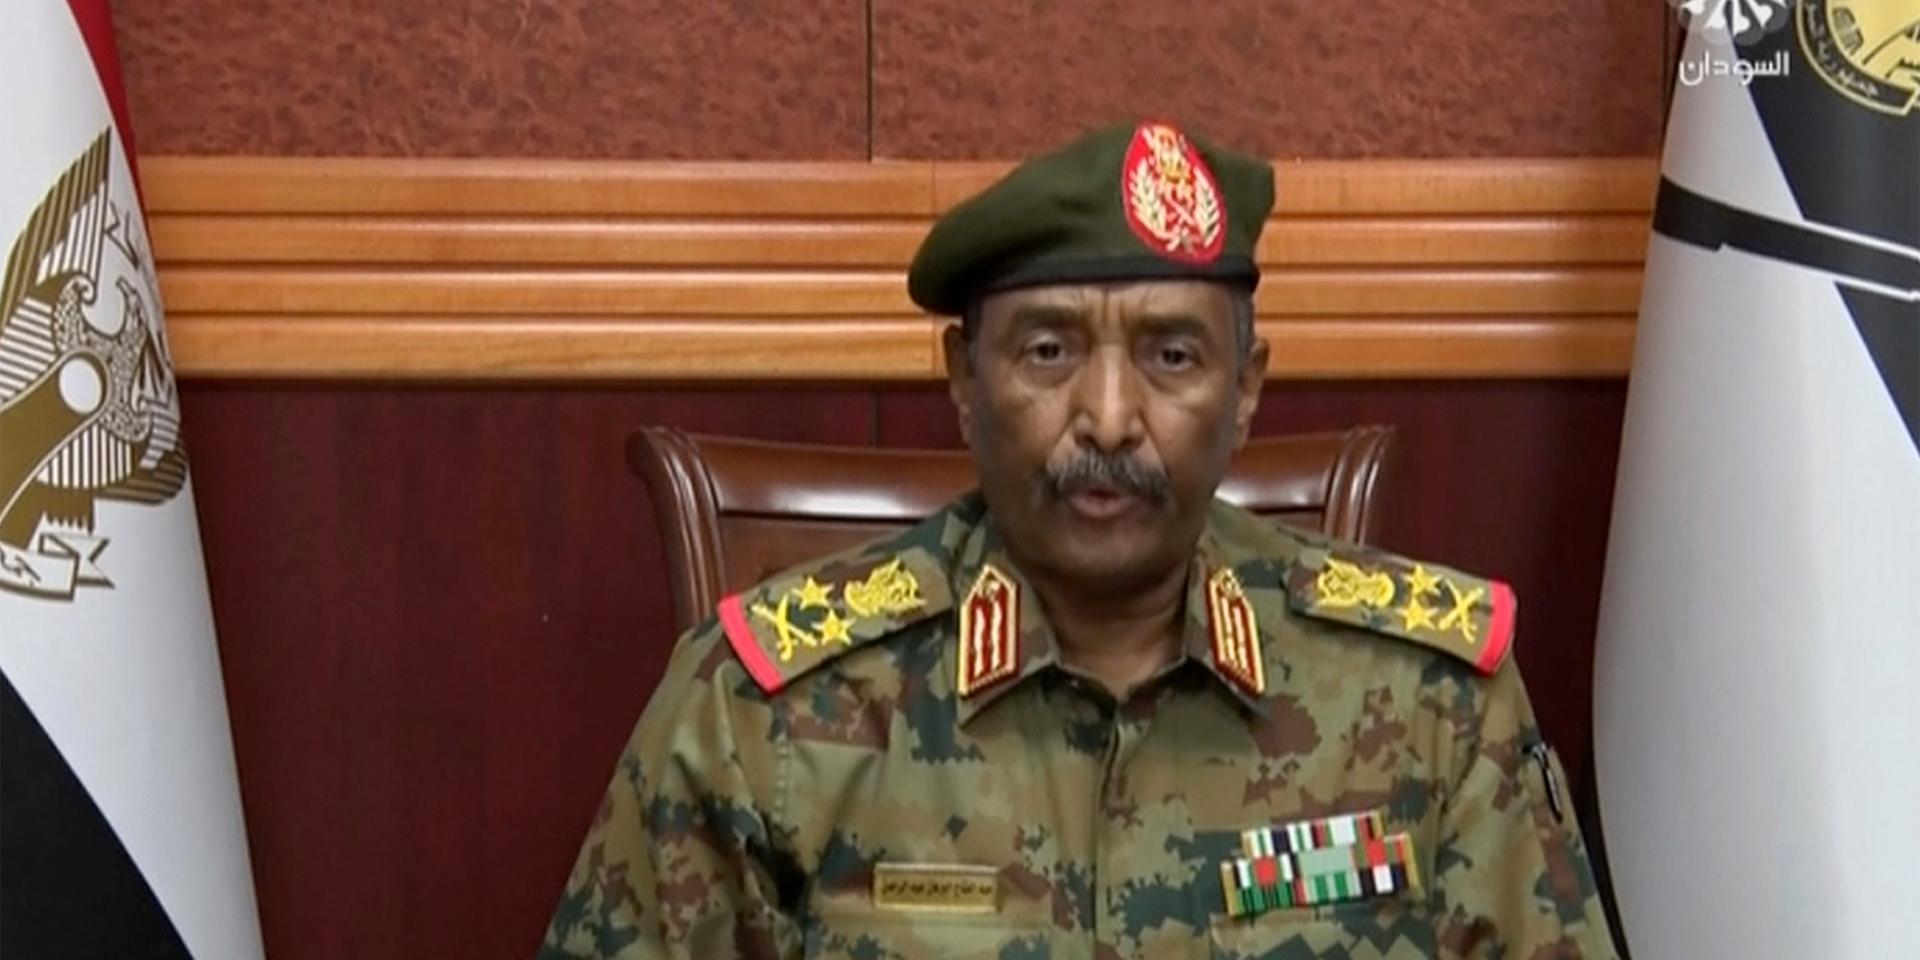 General Abdel-Fattah Burhan framträdde i teve och tillkännagav att landets styrande råd hade upplösts. Enligt generalen ska militären leda landet fram till valet 2023.